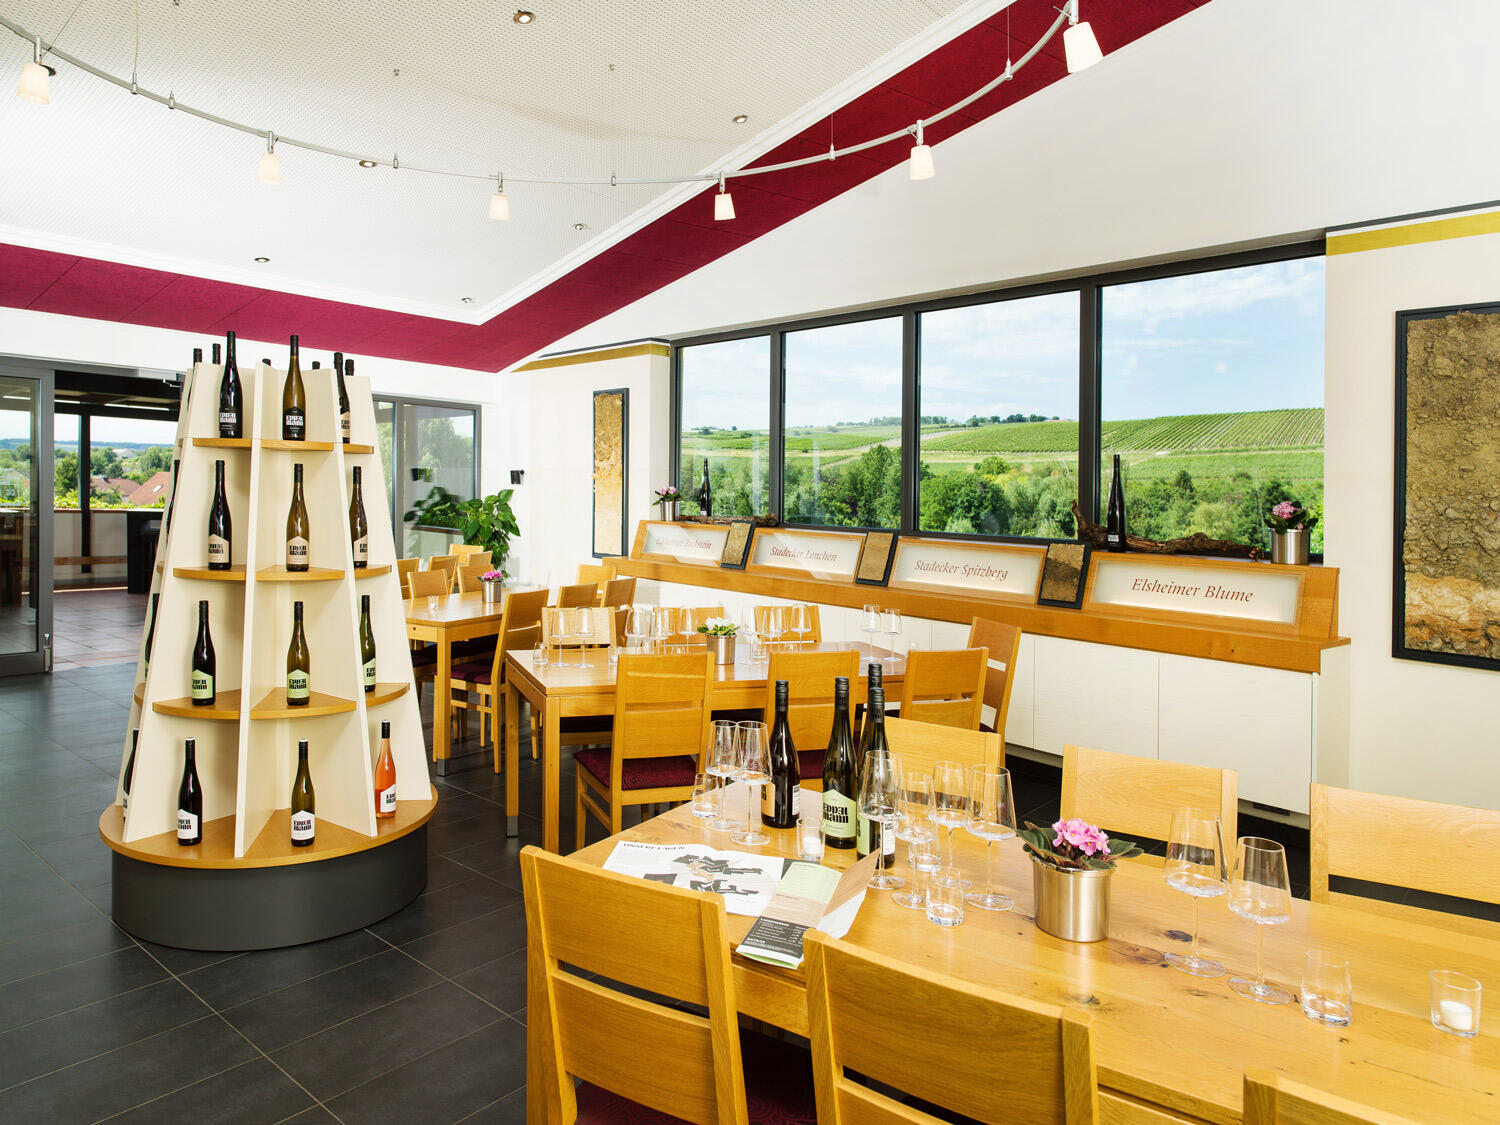 Vinothek in Rheinhessen mit hellen Holzitschen und Stühlen und großen Fenstern mit Weingartenblick. Auf den Tischen stehen Gläser und Weinflaschen.